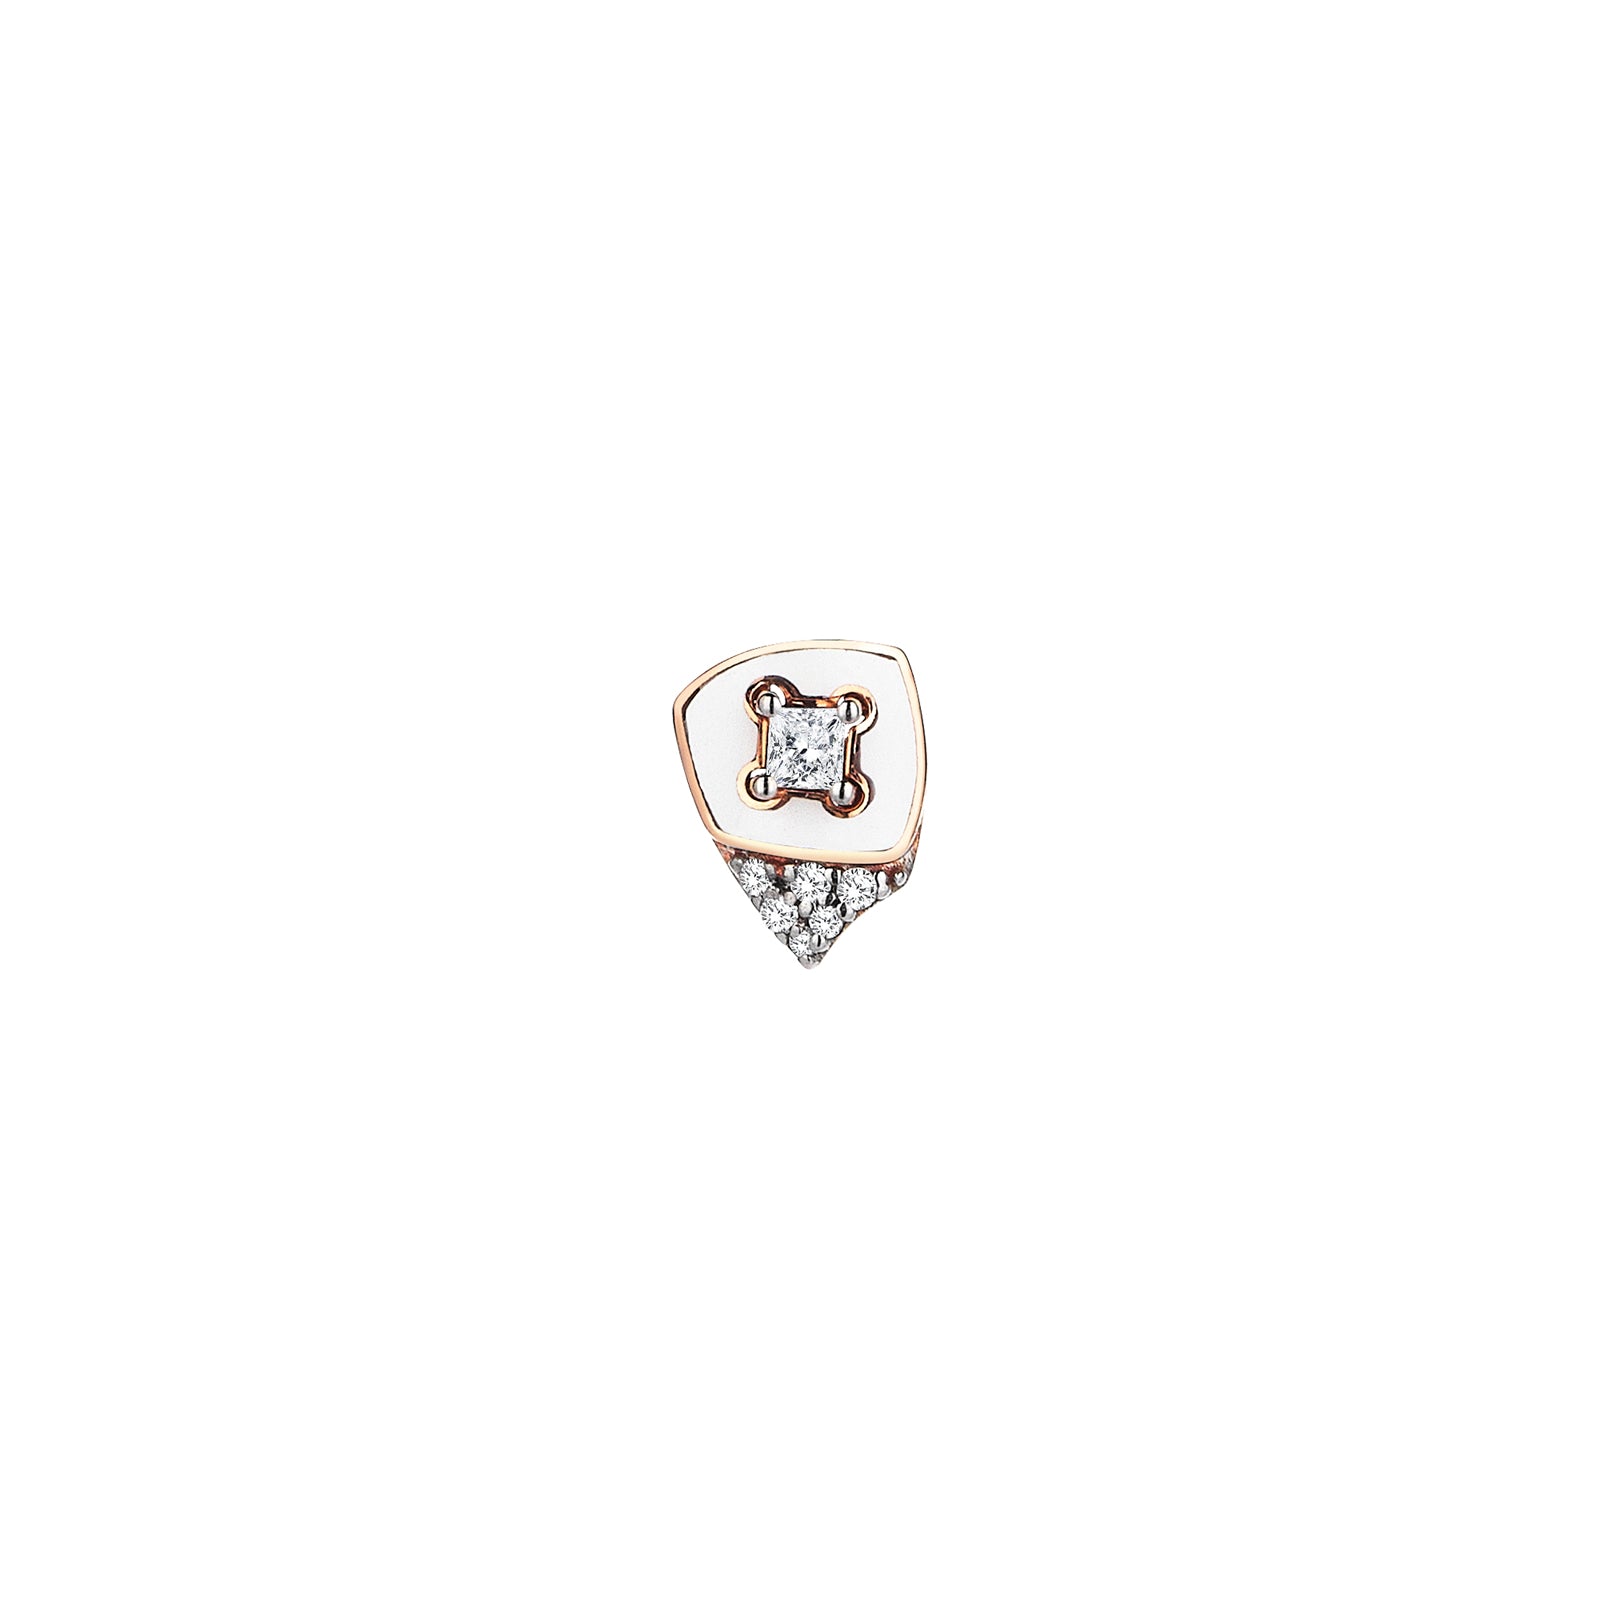 Adalyn Earring Roslow Gold / White Brilliant Diamond